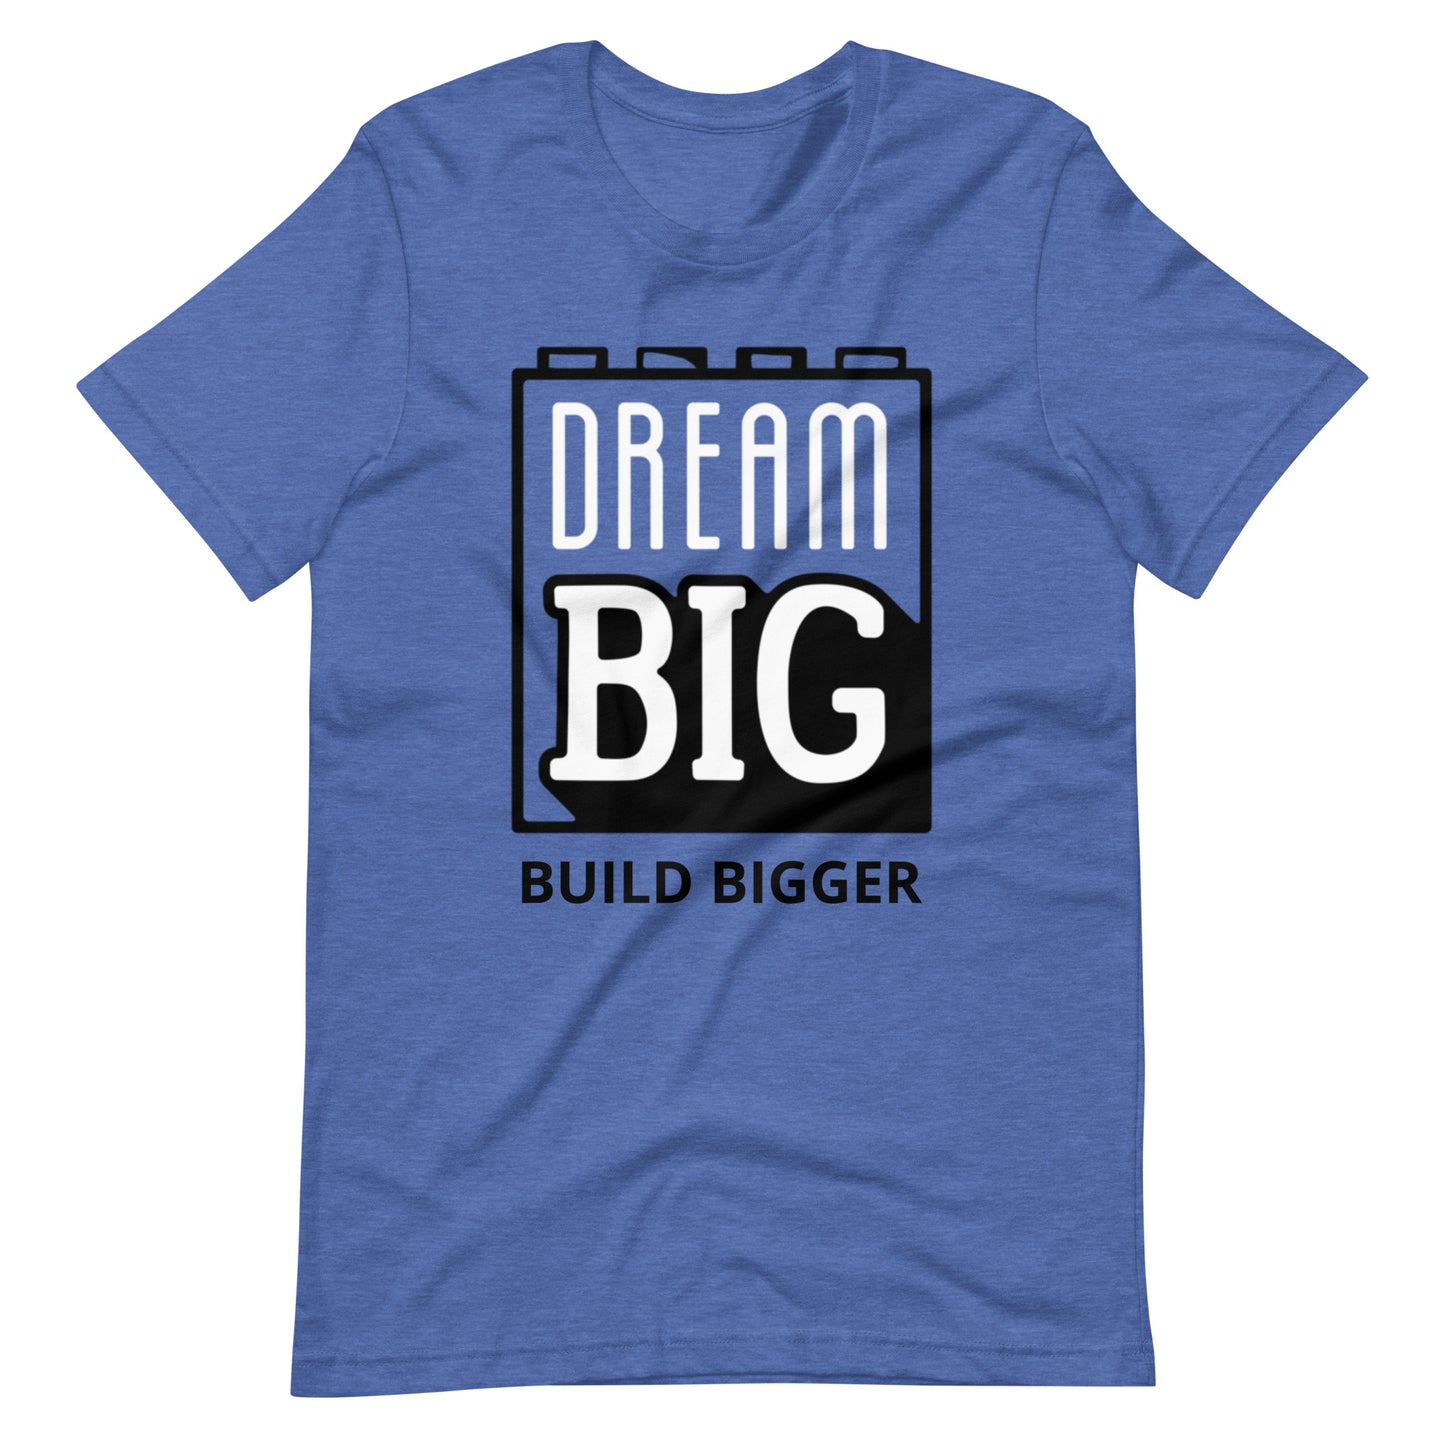 Dream Big - Build Bigger - Tee